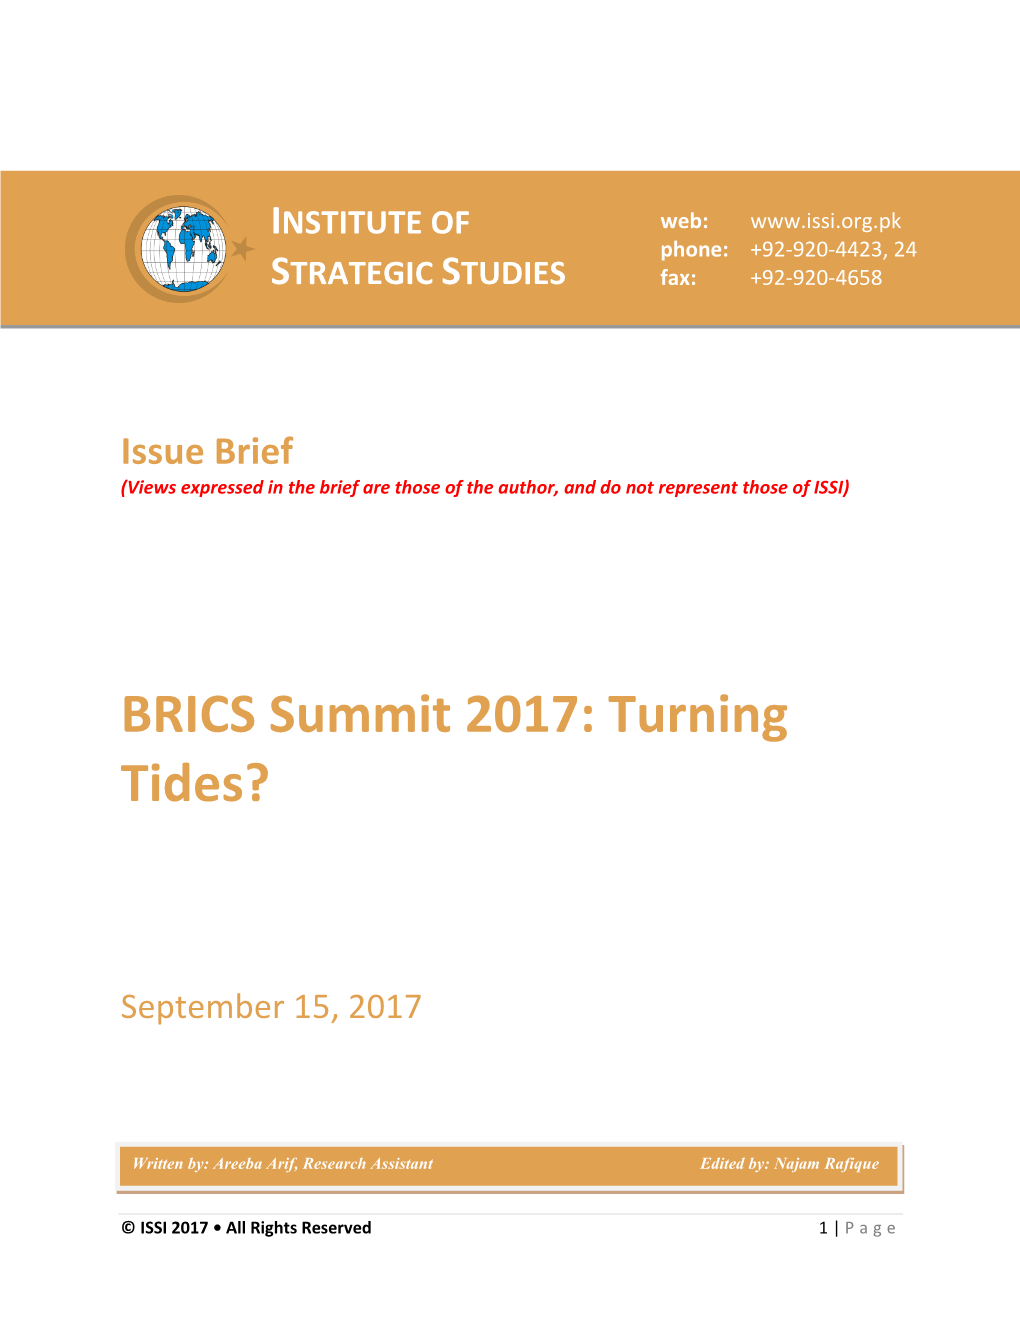 BRICS Summit 2017: Turning Tides?